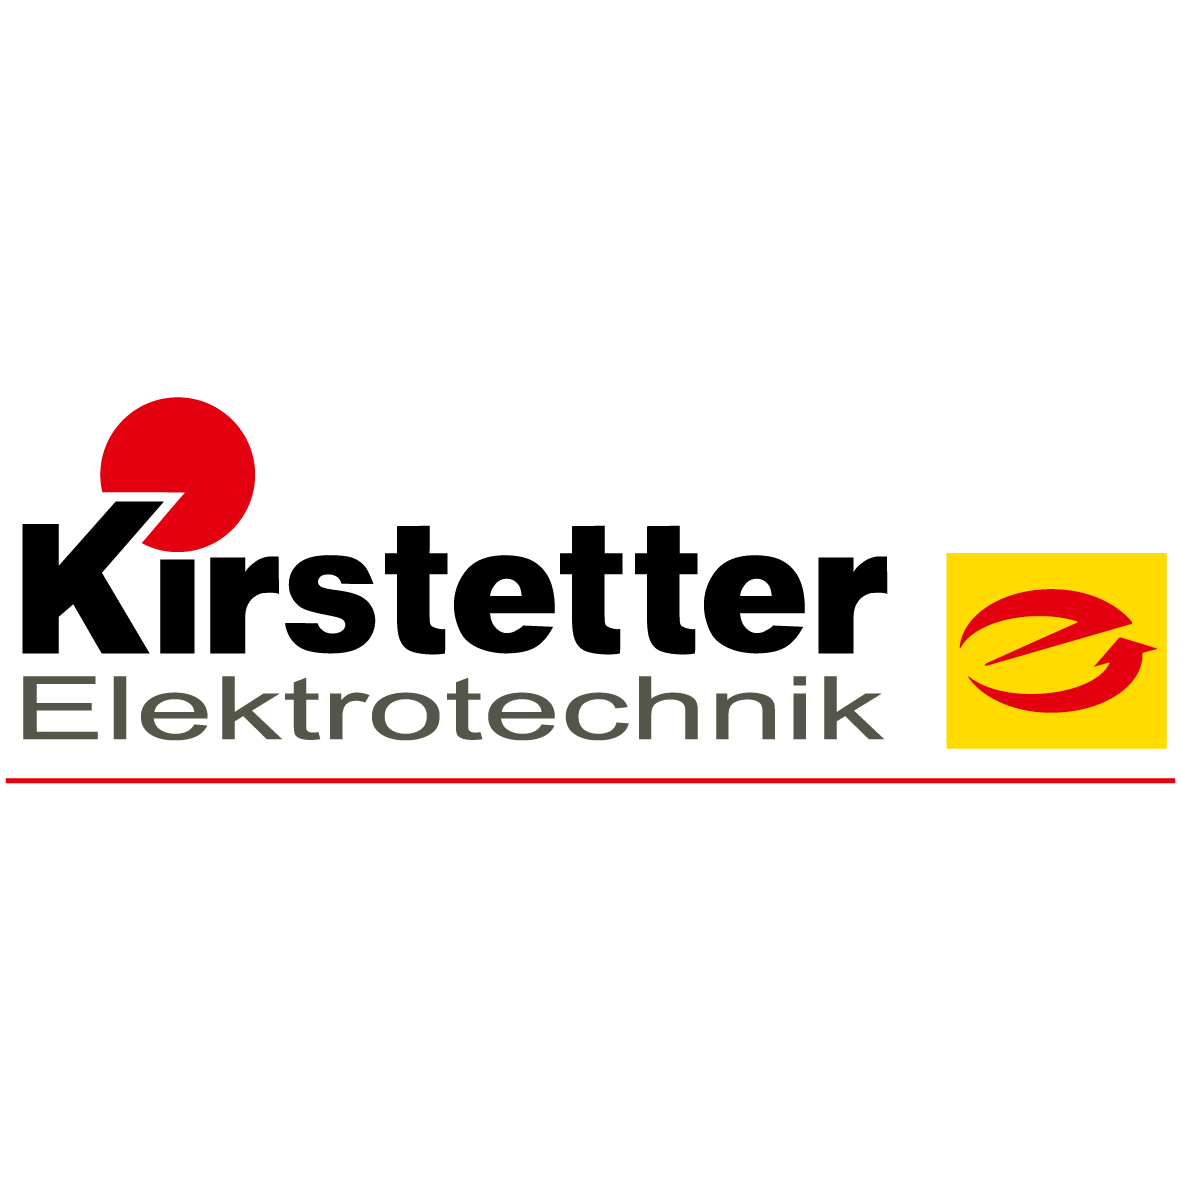 Kirstetter Elektrotechnik Logo